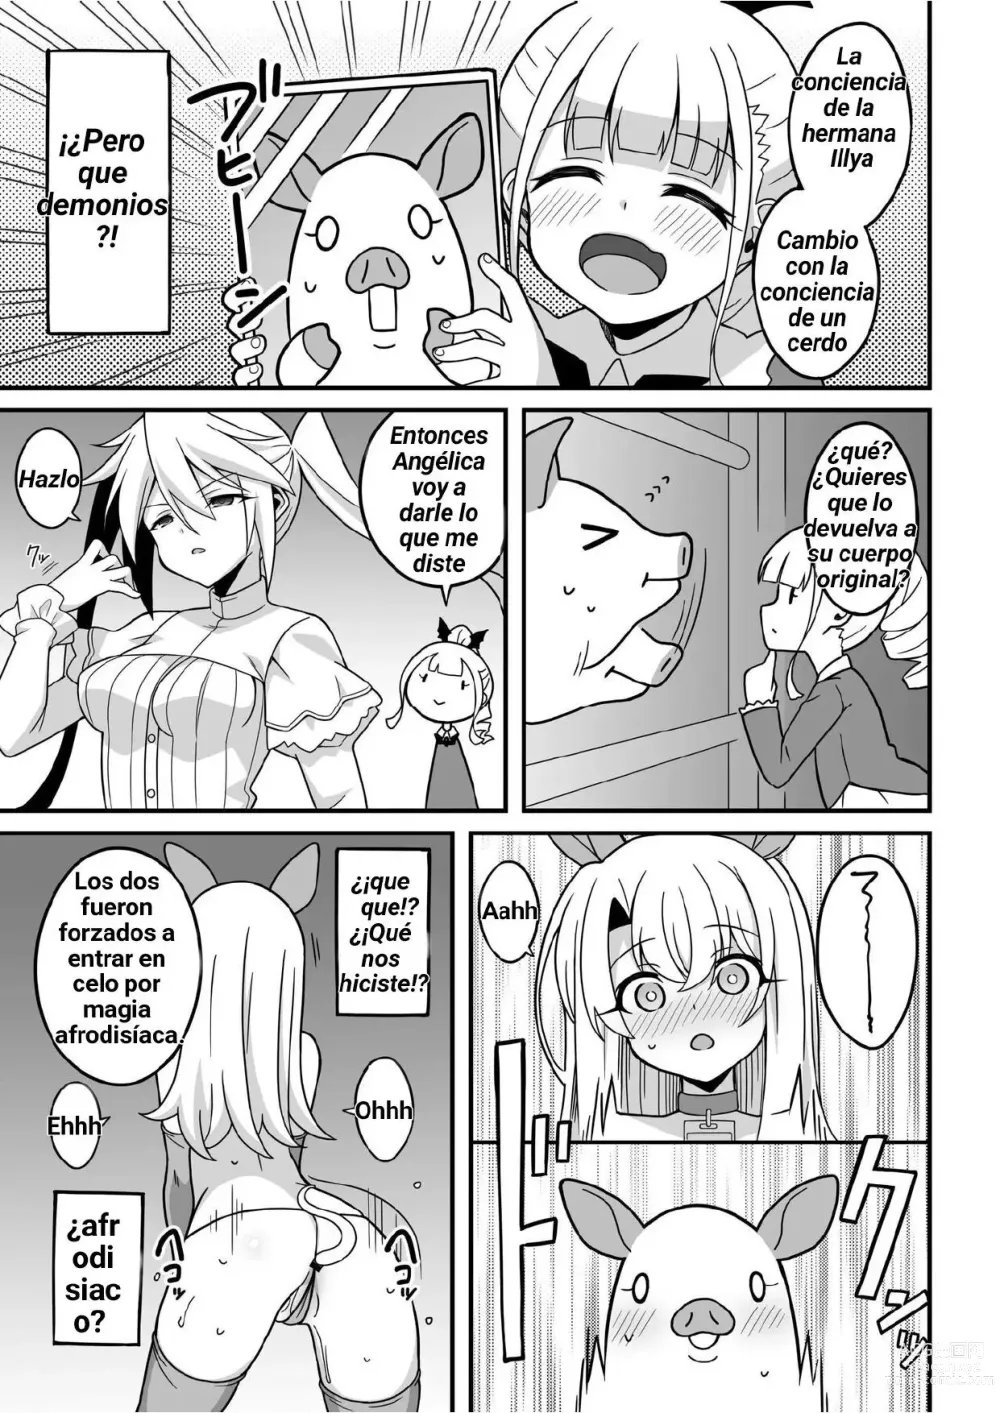 Page 3 of doujinshi Nos han cambiado de cuerpo